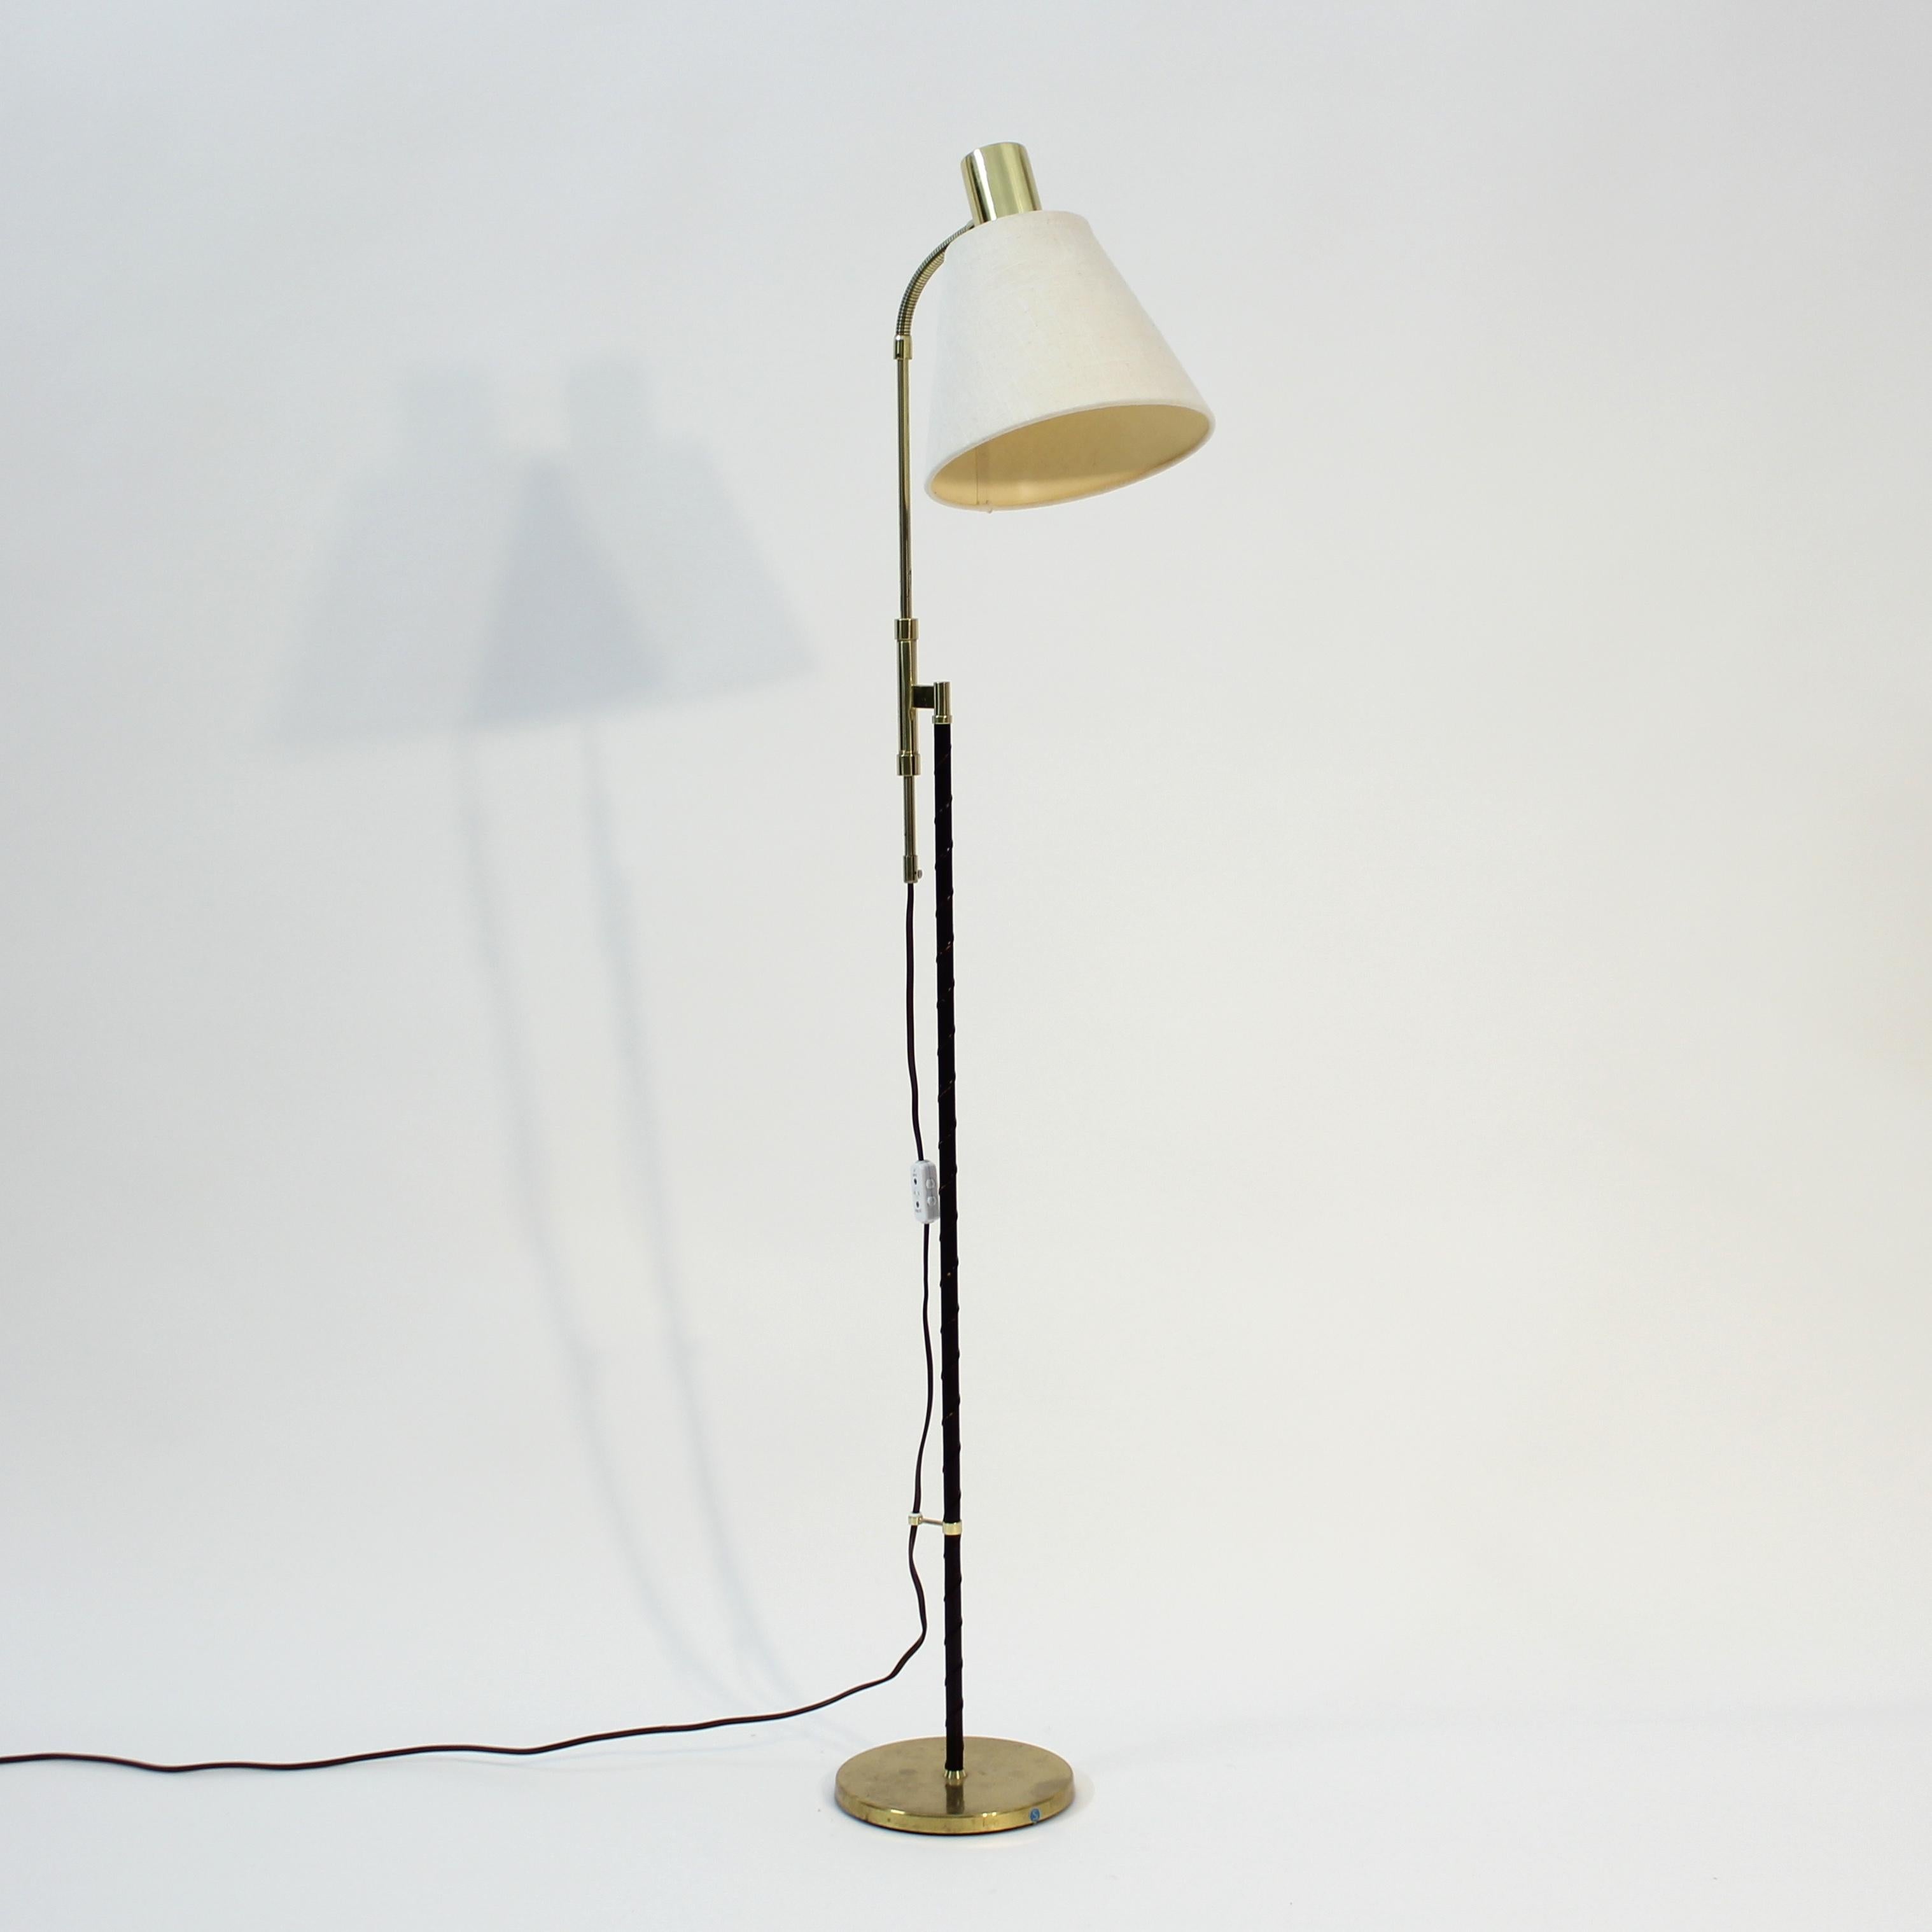 Swedish height adjustable floor lamp by MAE (Möller Armatur Eskilstuna), 1960s For Sale 2